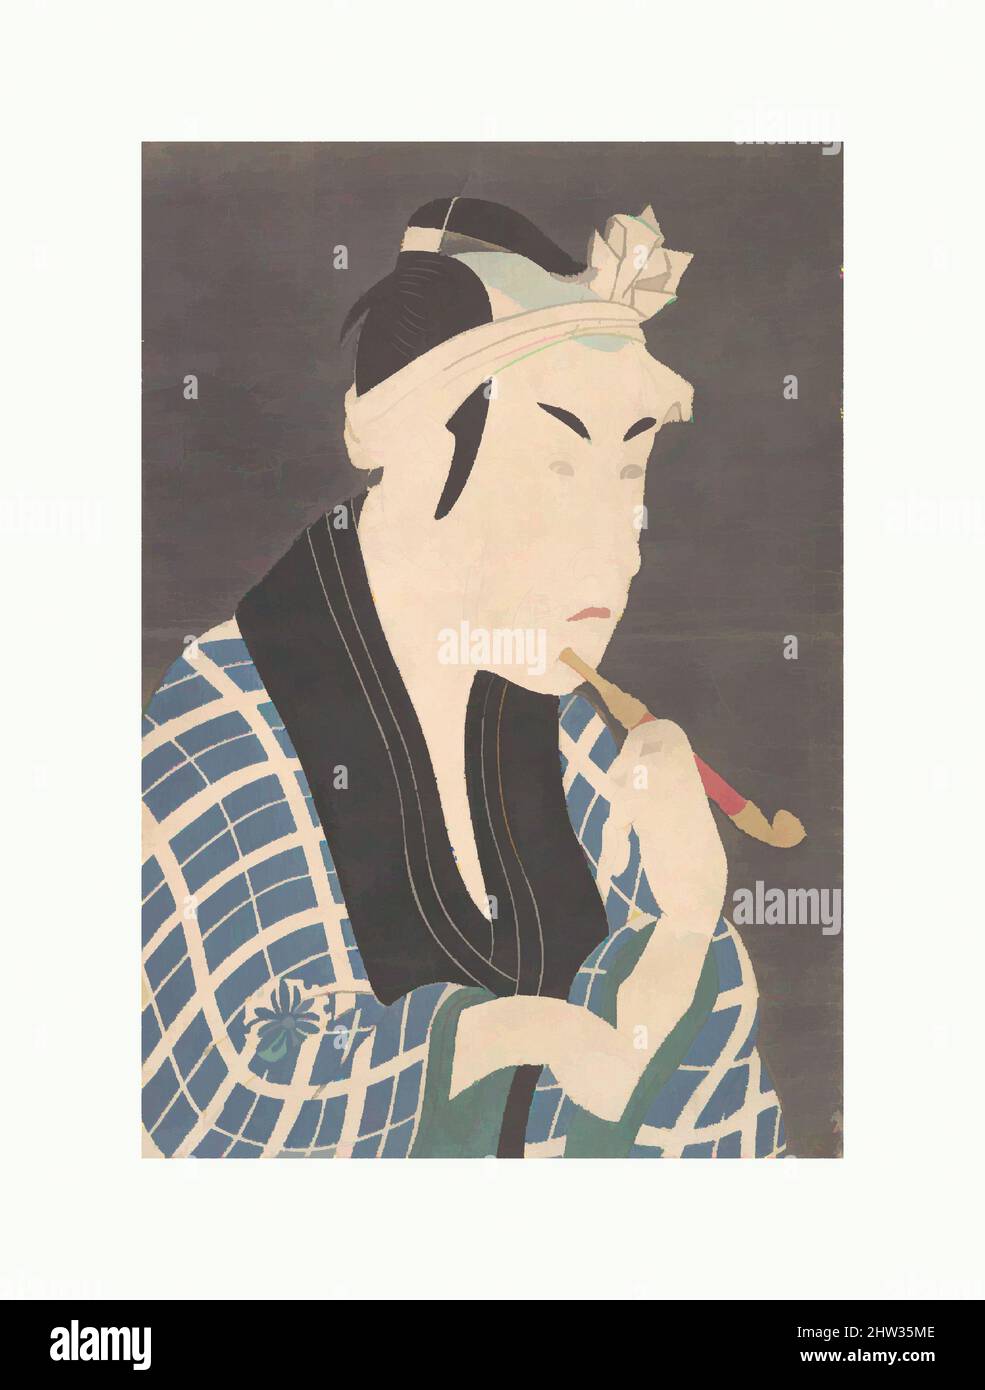 Art inspiré par Matsumoto Koshiro IV comme le Peddler du poisson Gorobei, période Edo (1615–1868), probablement fin 1880s ou début 1890s, Japon, imprimé en polychrome sur bois; encre et couleur sur papier avec sol en mica, 15 x 10 1/5 po. (38,1 x 25,9 cm), tirages, après Tōshūsai Sharaku (japonais, actif, œuvres classiques modernisées par Artotop avec une touche de modernité. Formes, couleur et valeur, impact visuel accrocheur sur l'art émotions par la liberté d'œuvres d'art d'une manière contemporaine. Un message intemporel qui cherche une nouvelle direction créative. Artistes qui se tournent vers le support numérique et créent le NFT Artotop Banque D'Images